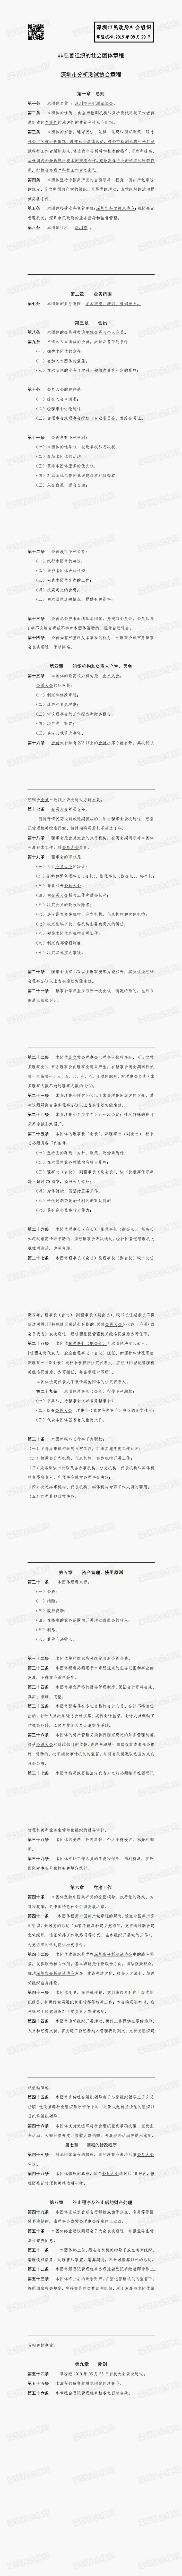 深圳市分析测试协会章程（2019.8.29）_0.jpg